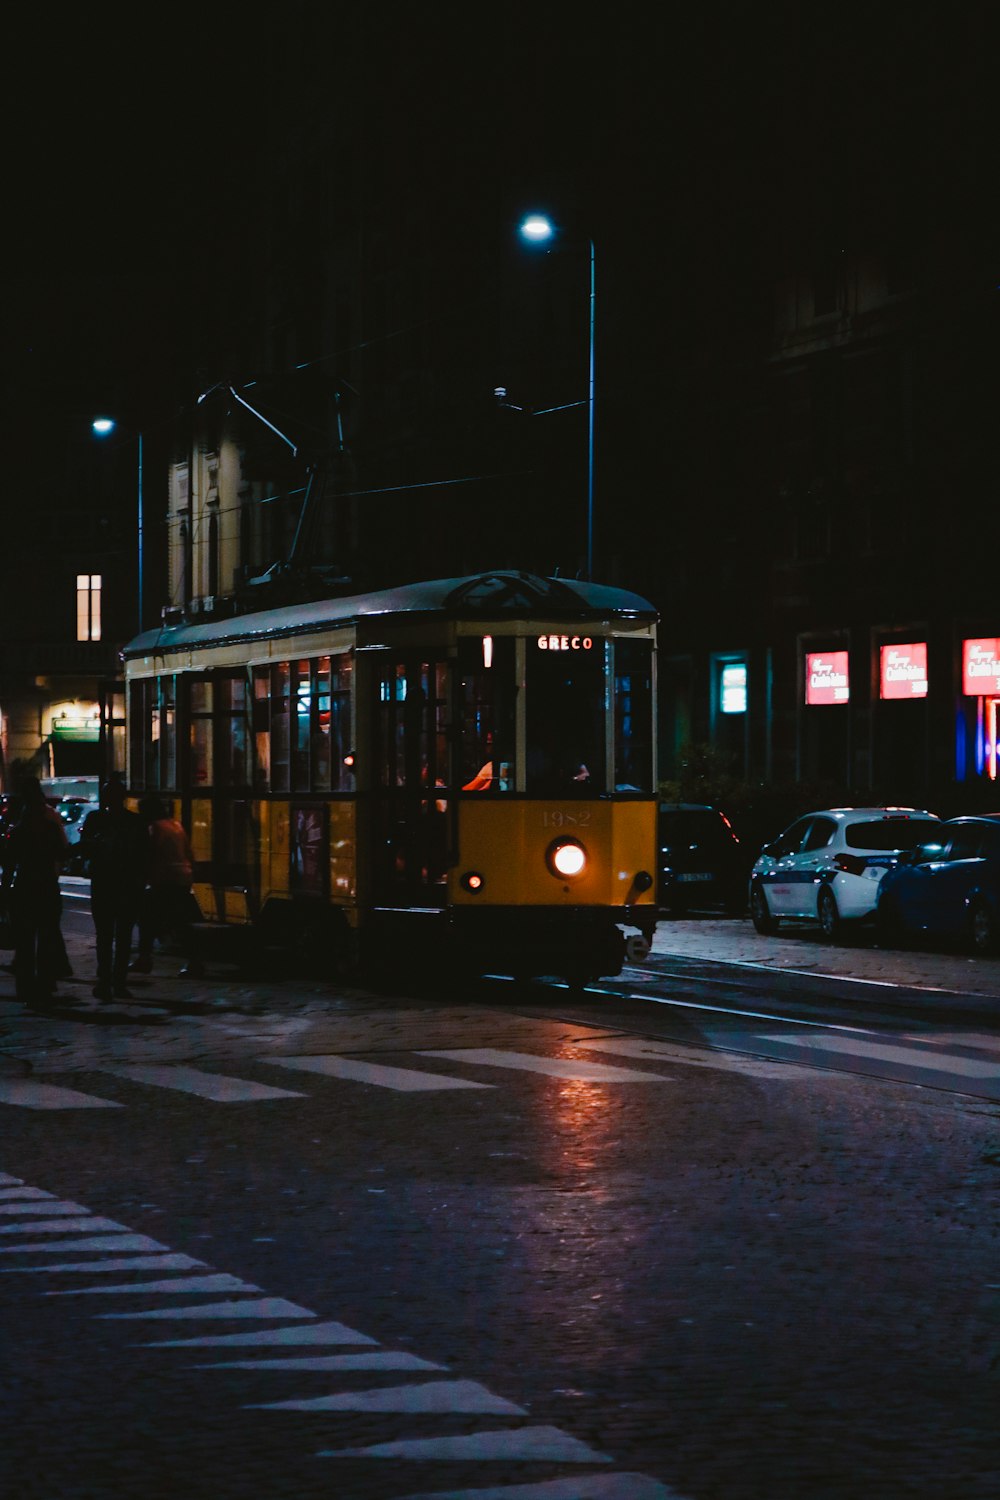 Persone in piedi vicino al treno giallo durante la notte